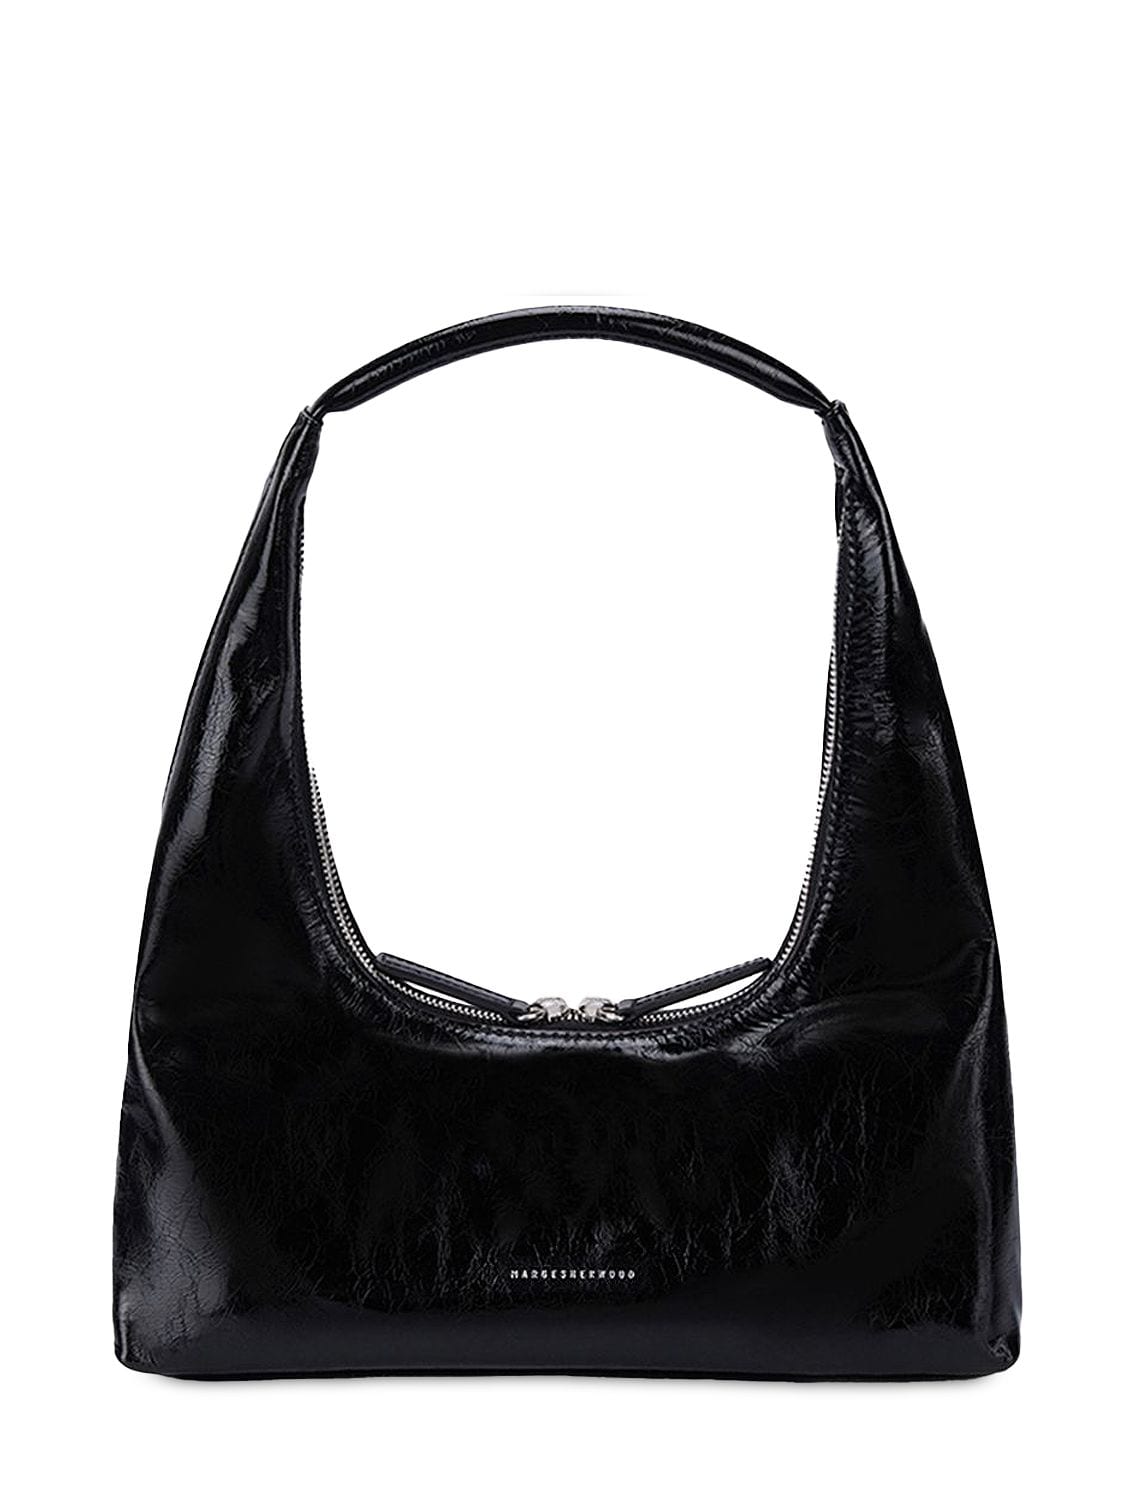 Marge Sherwood Hobo Leather Shoulder Bag In Black Crinkle